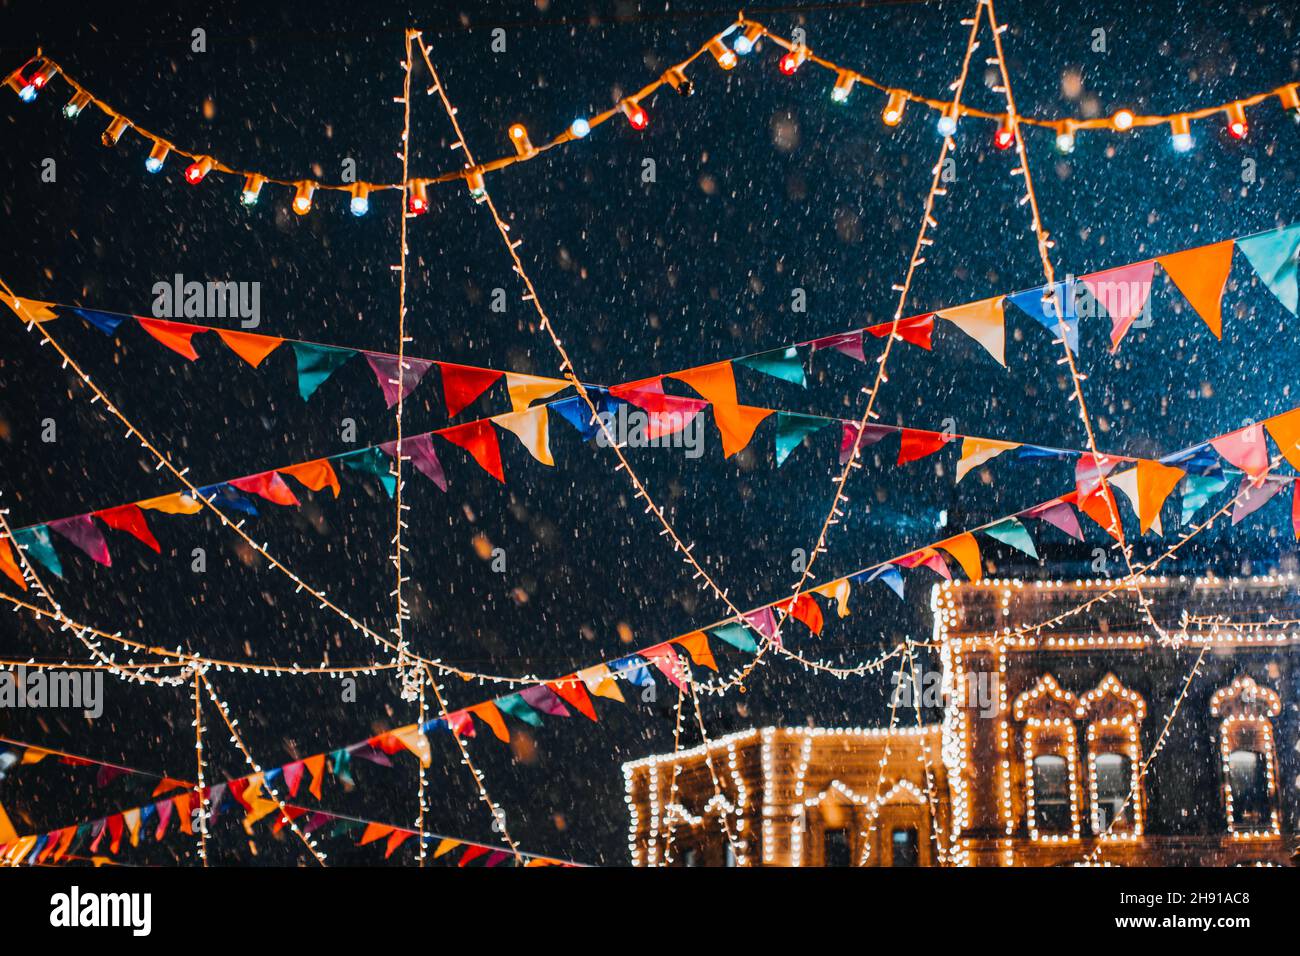 Neige volante dans la lumière du soir dans une atmosphère magique festive du nouvel an avec guirlandes et drapeaux Banque D'Images